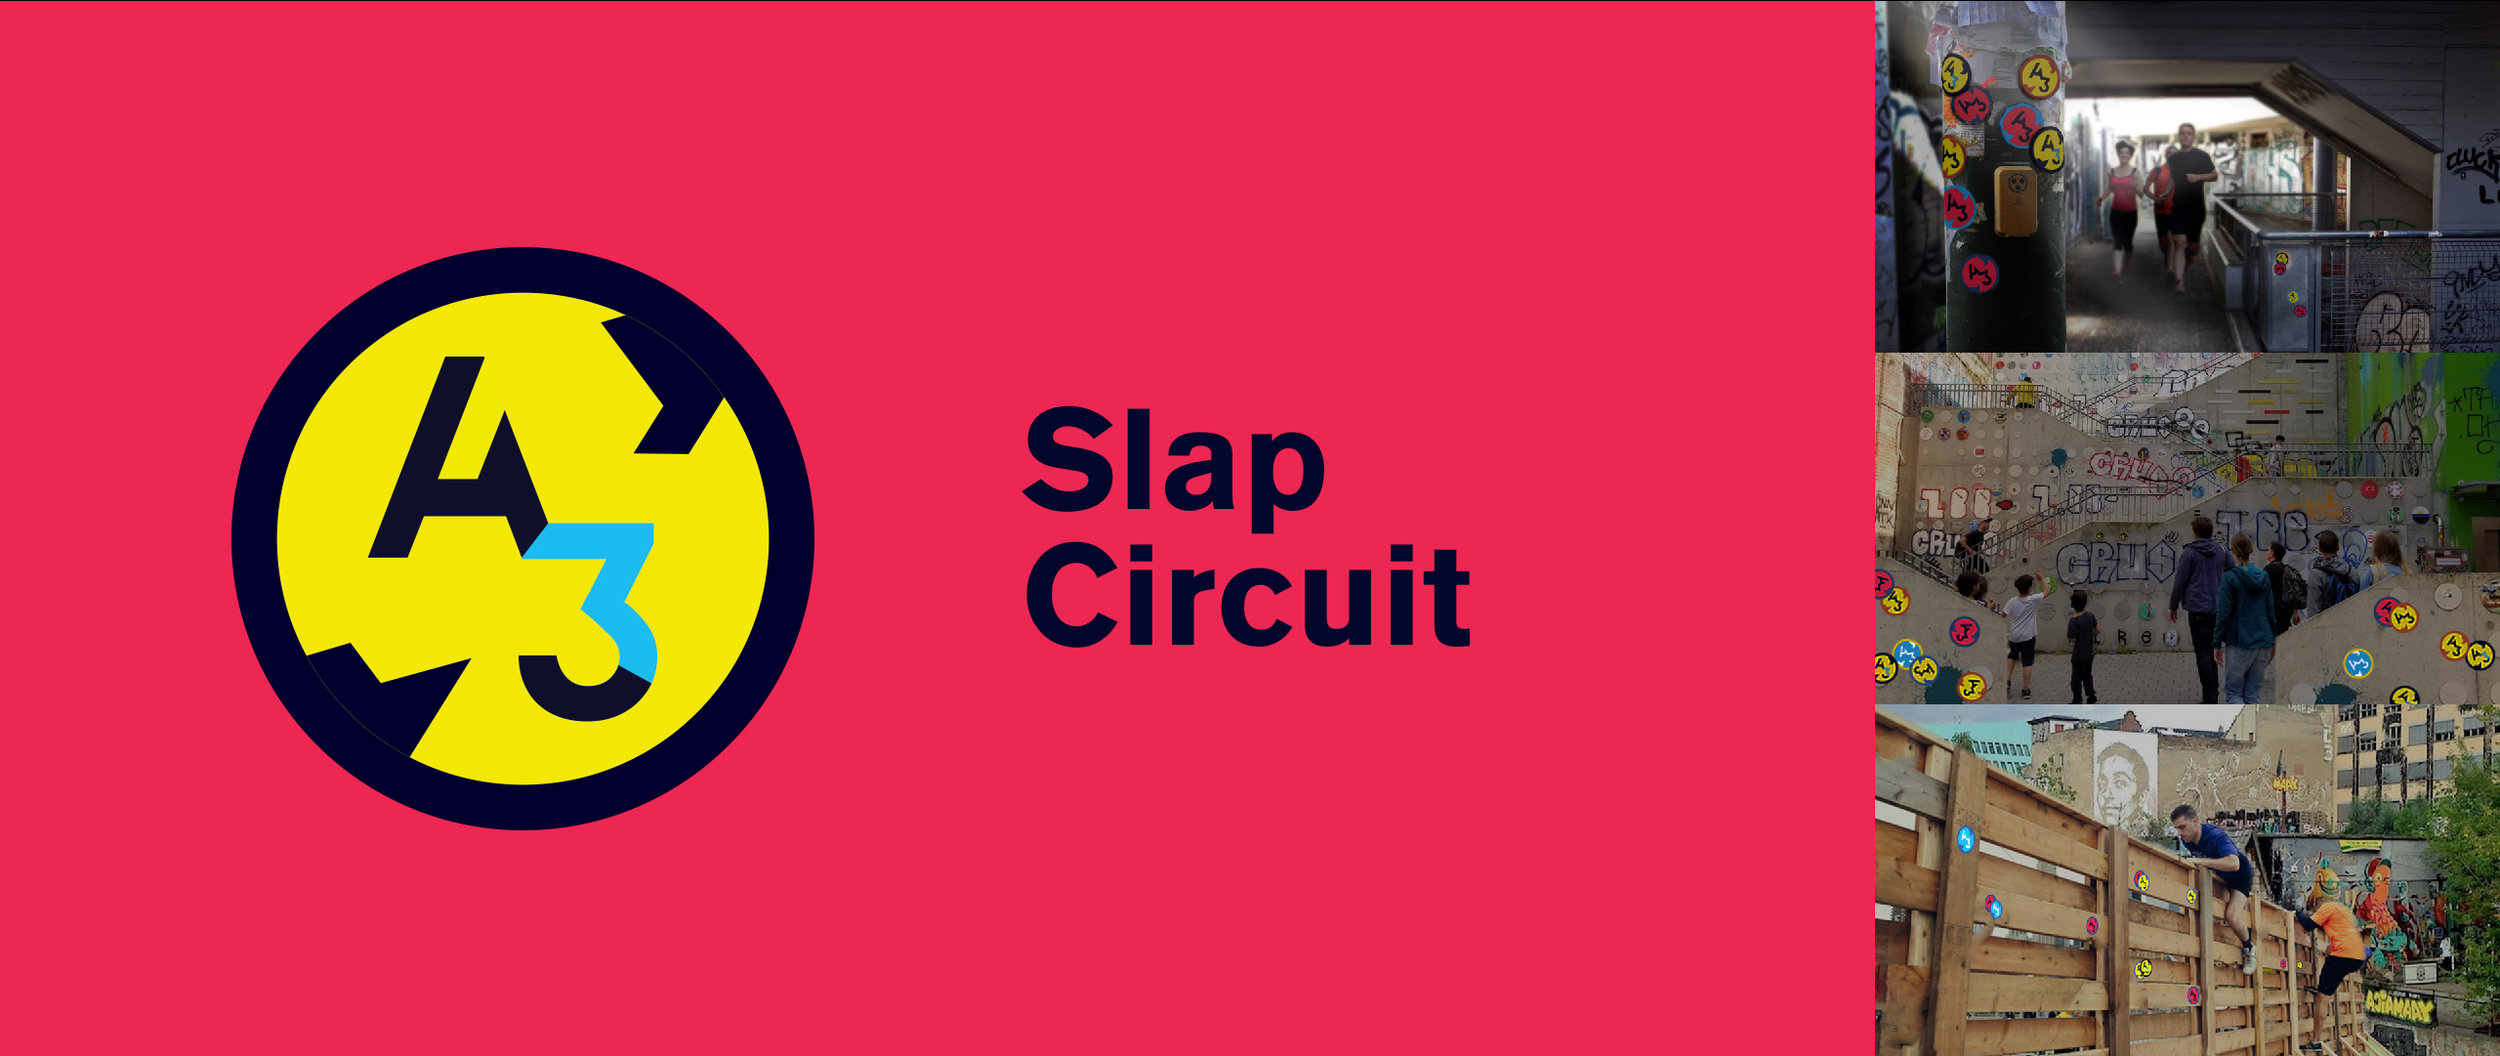 A3_Slap Sticker-02.jpg